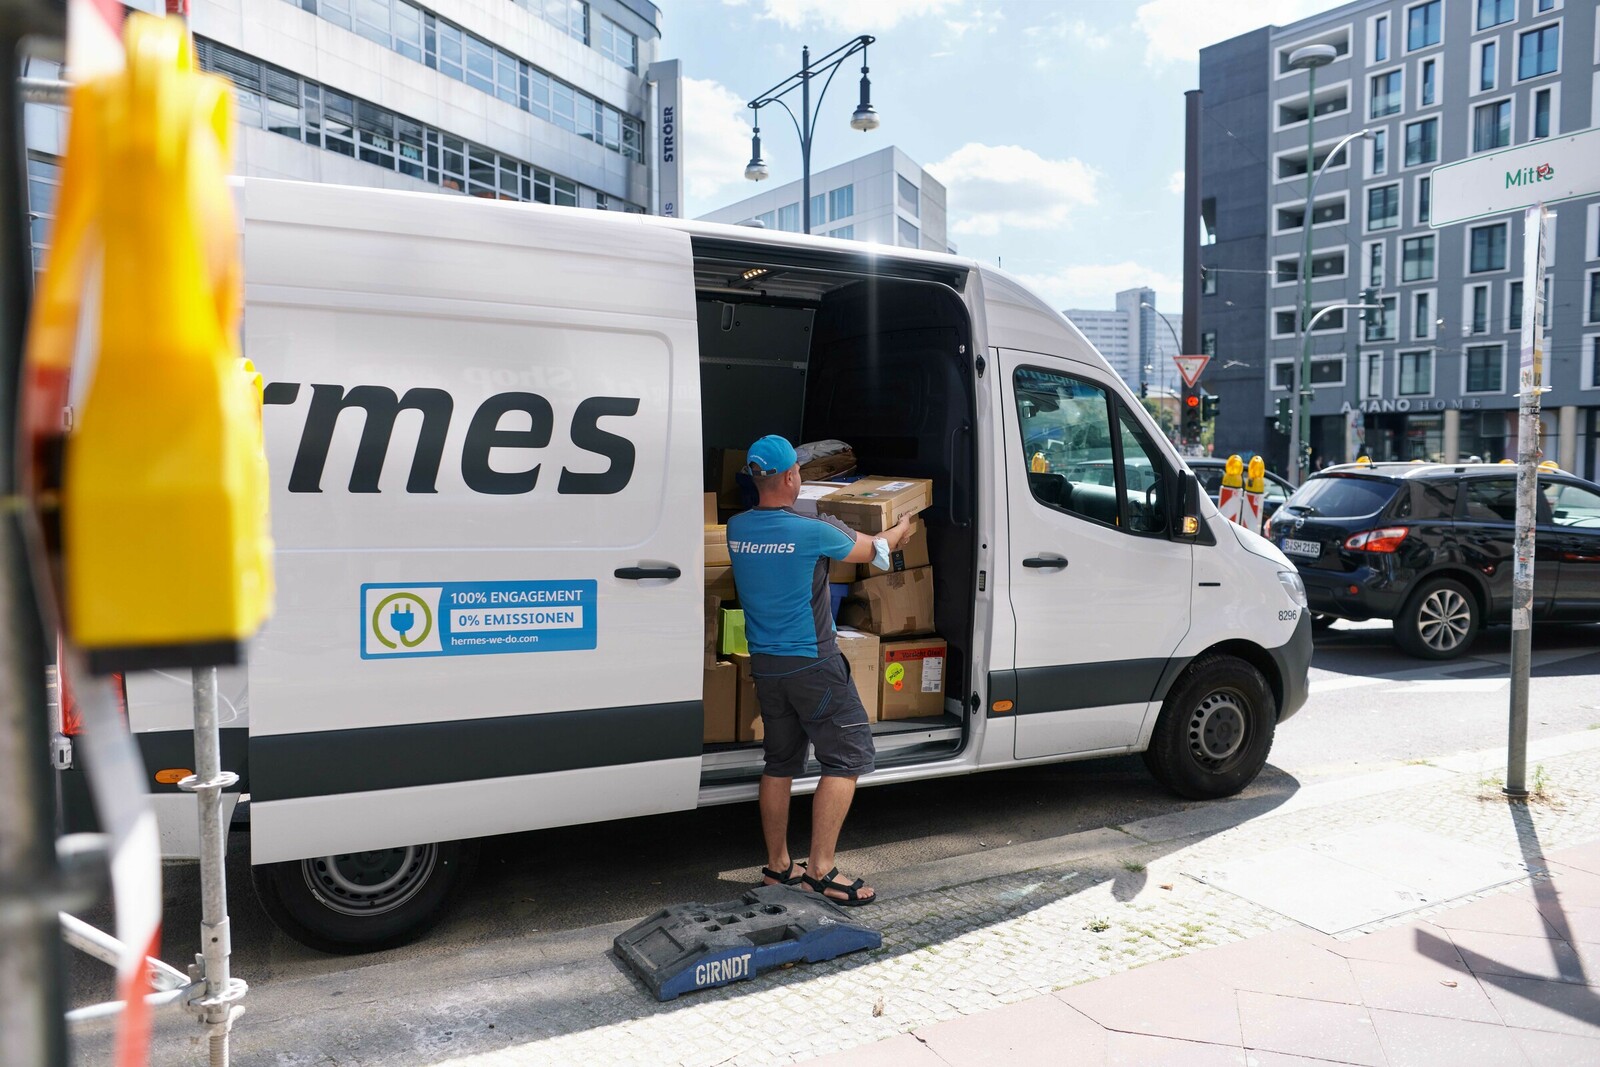 Derzeit sind 49 E-Transporter von Hermes in Hamburg unterwegs, bis 2023 sollen es 240 werden.